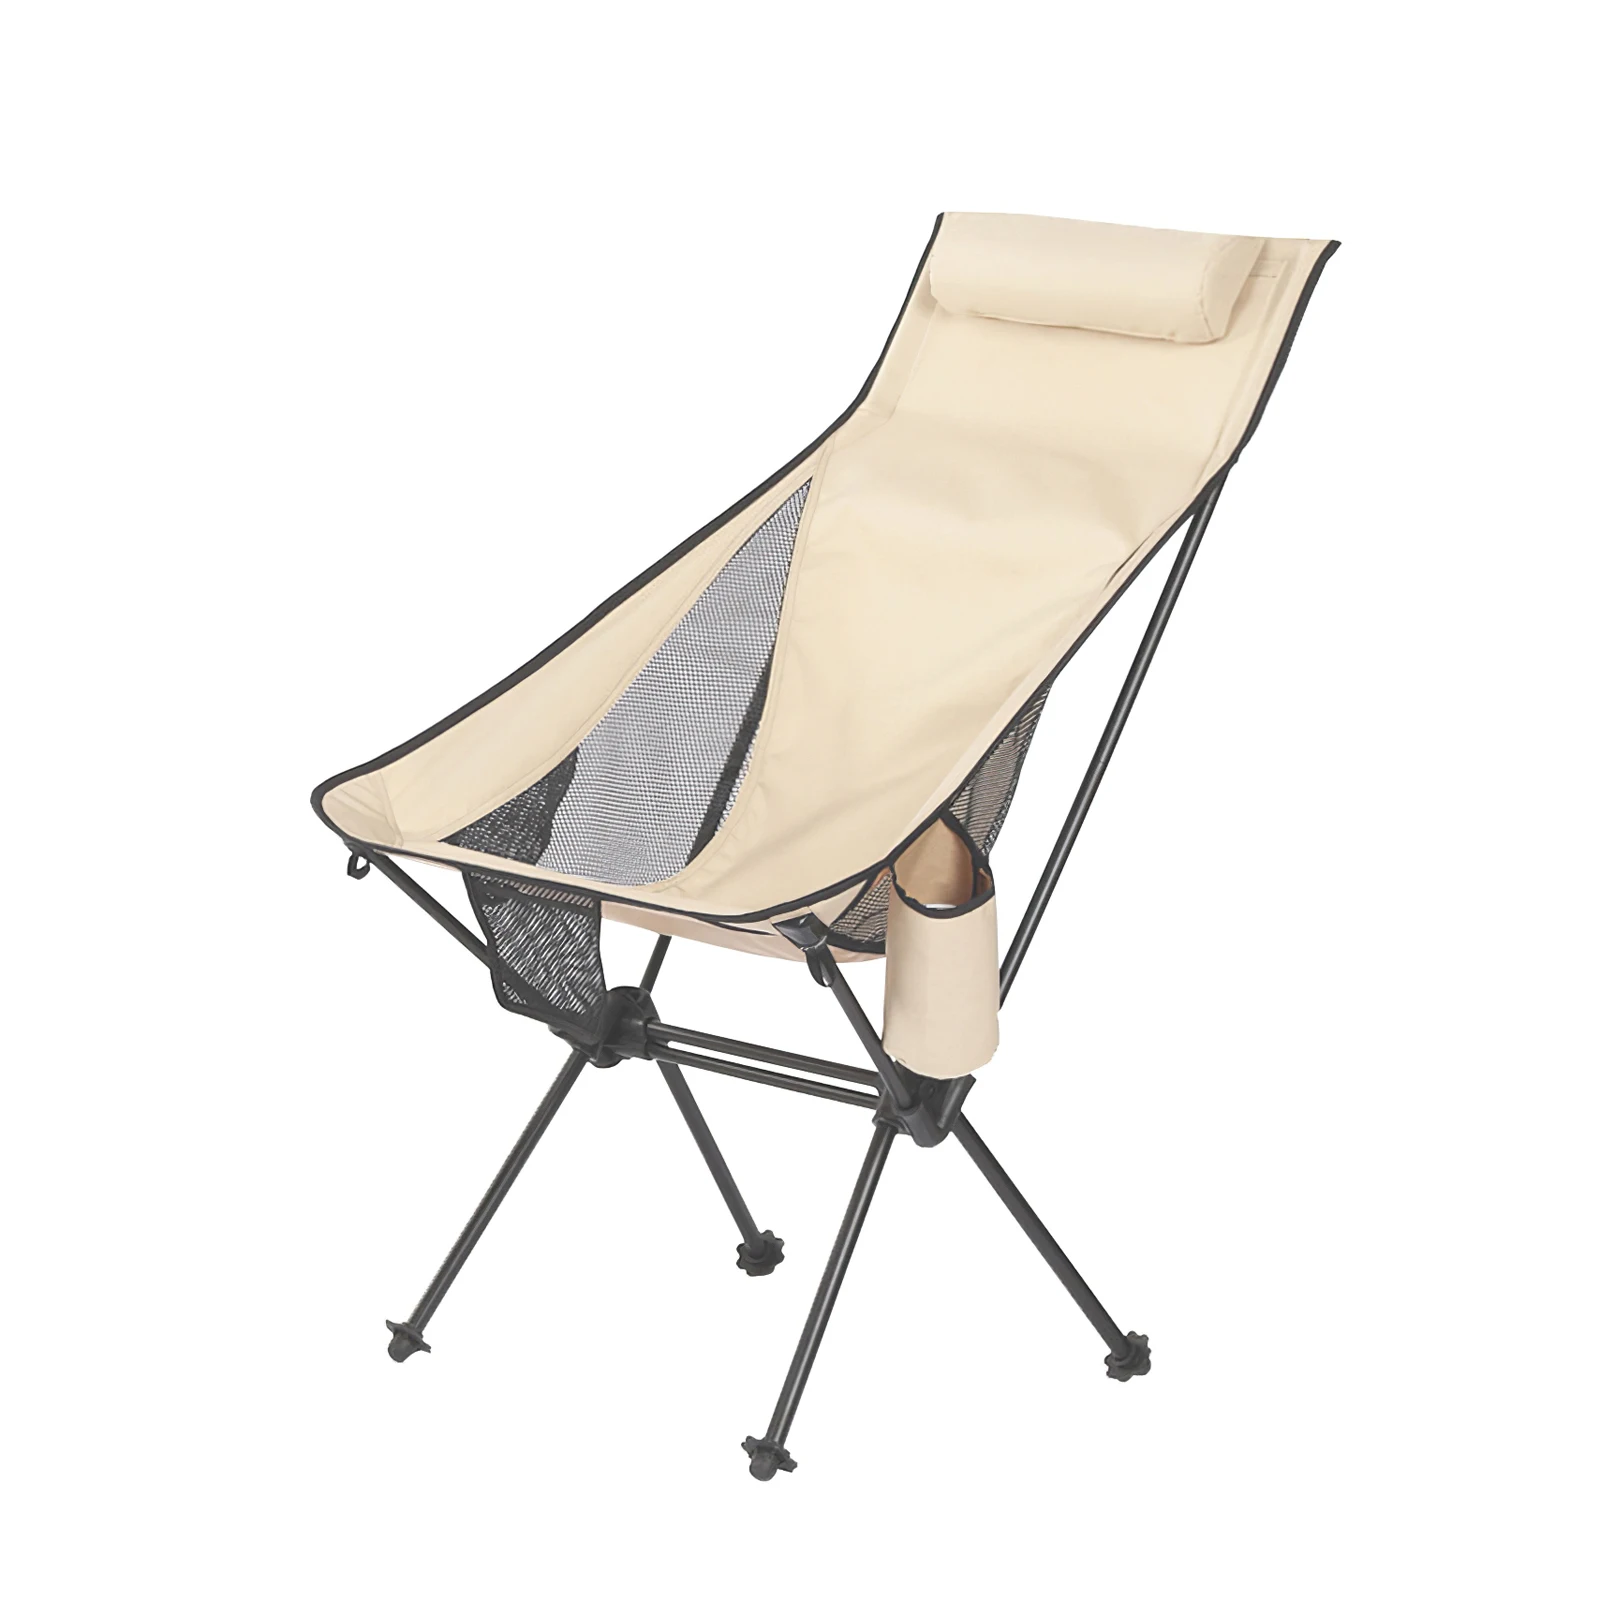 저렴한 새로운 경량 컴팩트 휴대용 야외 접이식 비치 의자 낚시 피크닉 의자 Foldable 캠핑 의자 스토리지 가방